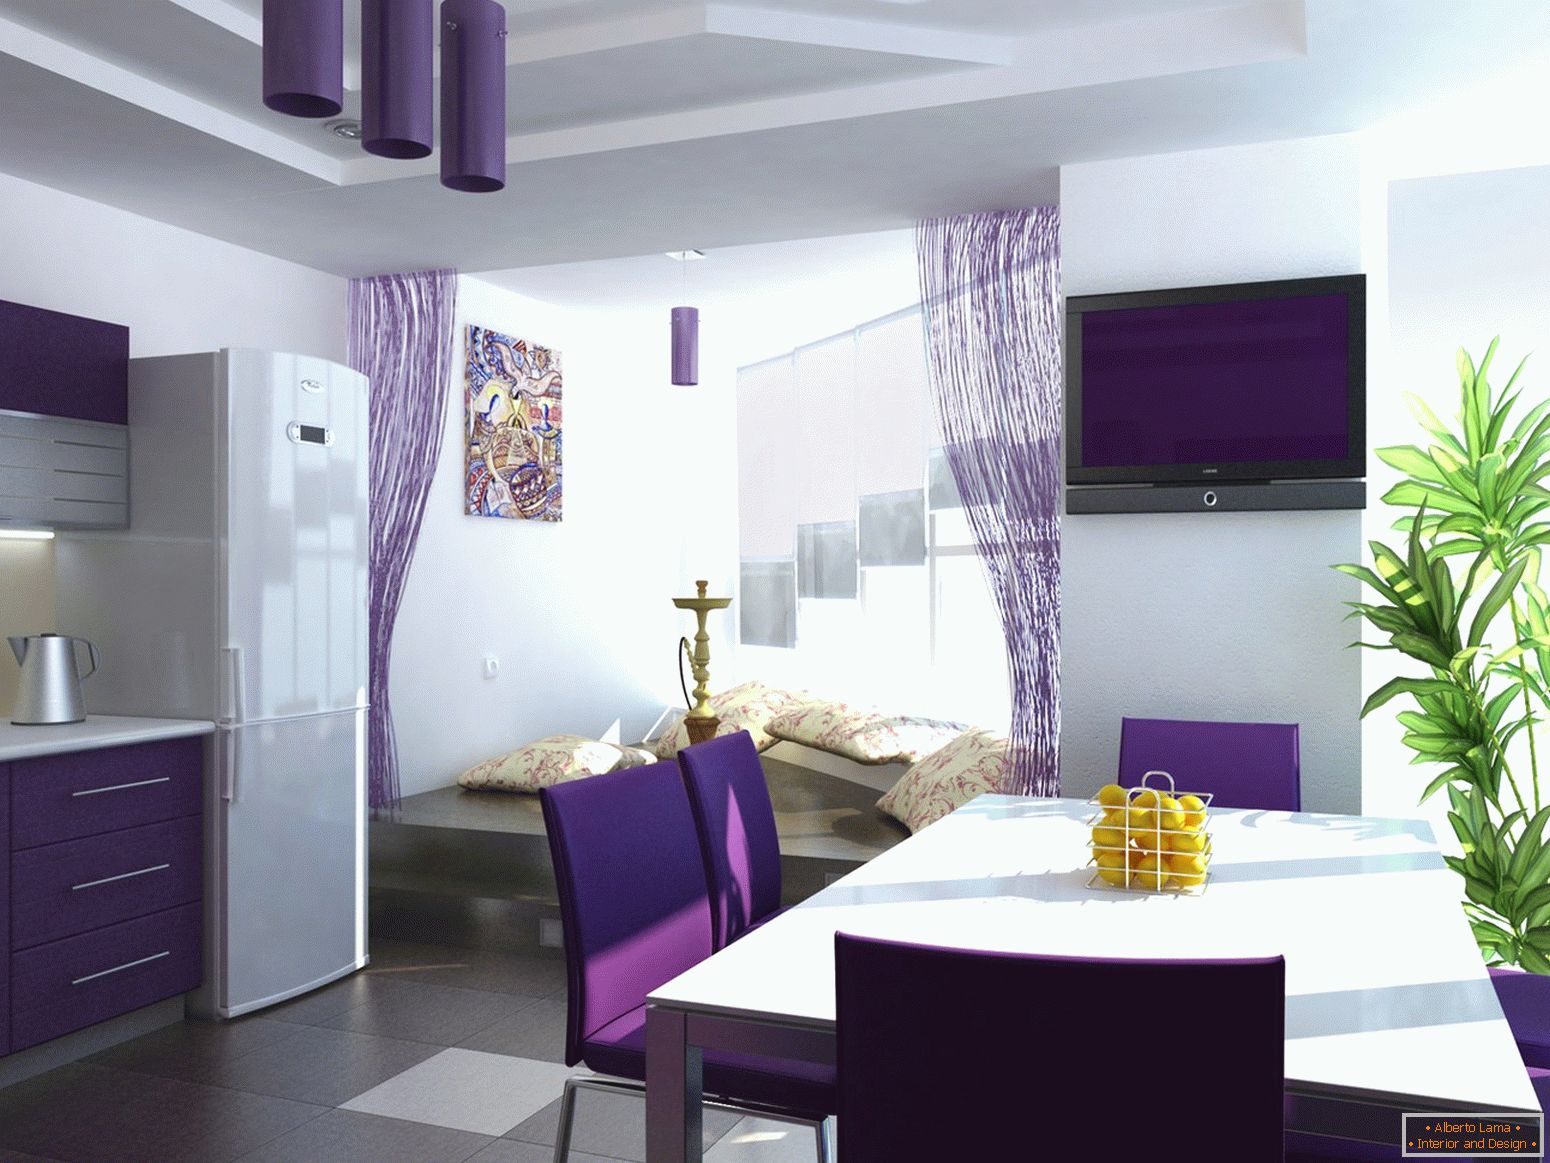 Cortinas violetas na cozinha